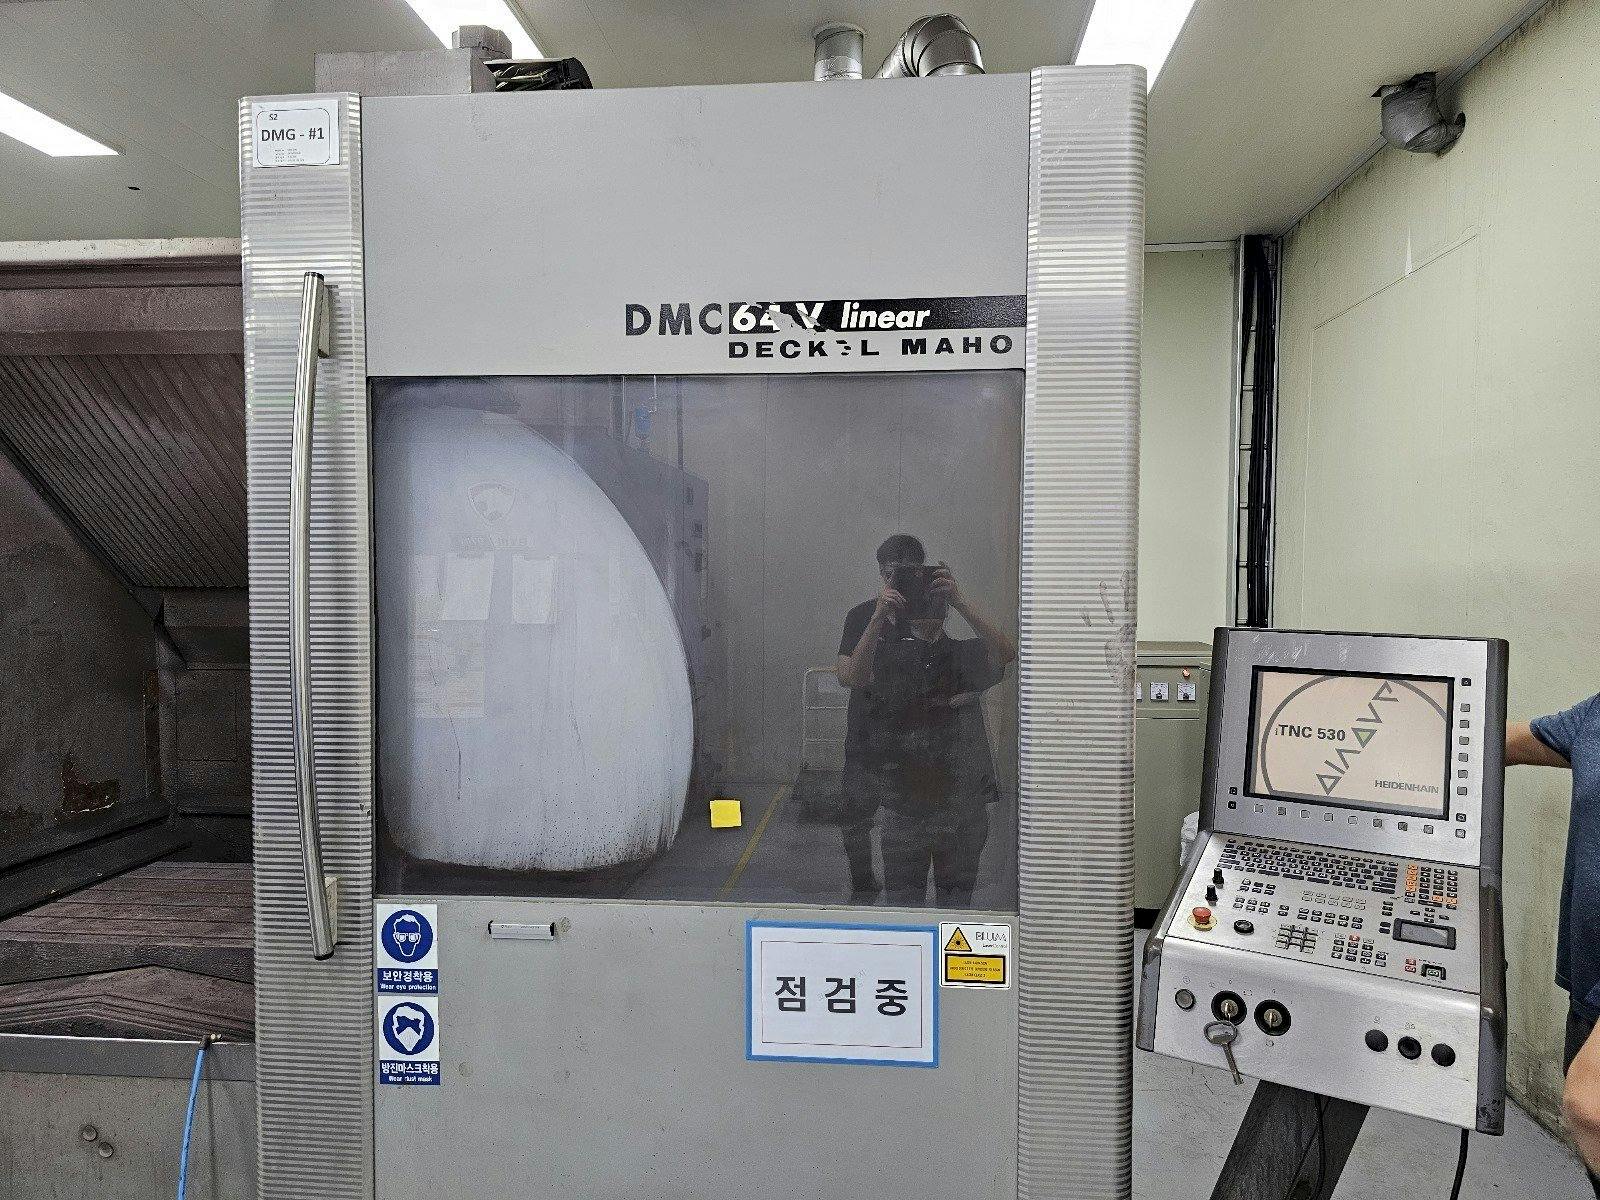 Vista frontal de la máquina DECKEL MAHO DMC 64V linear